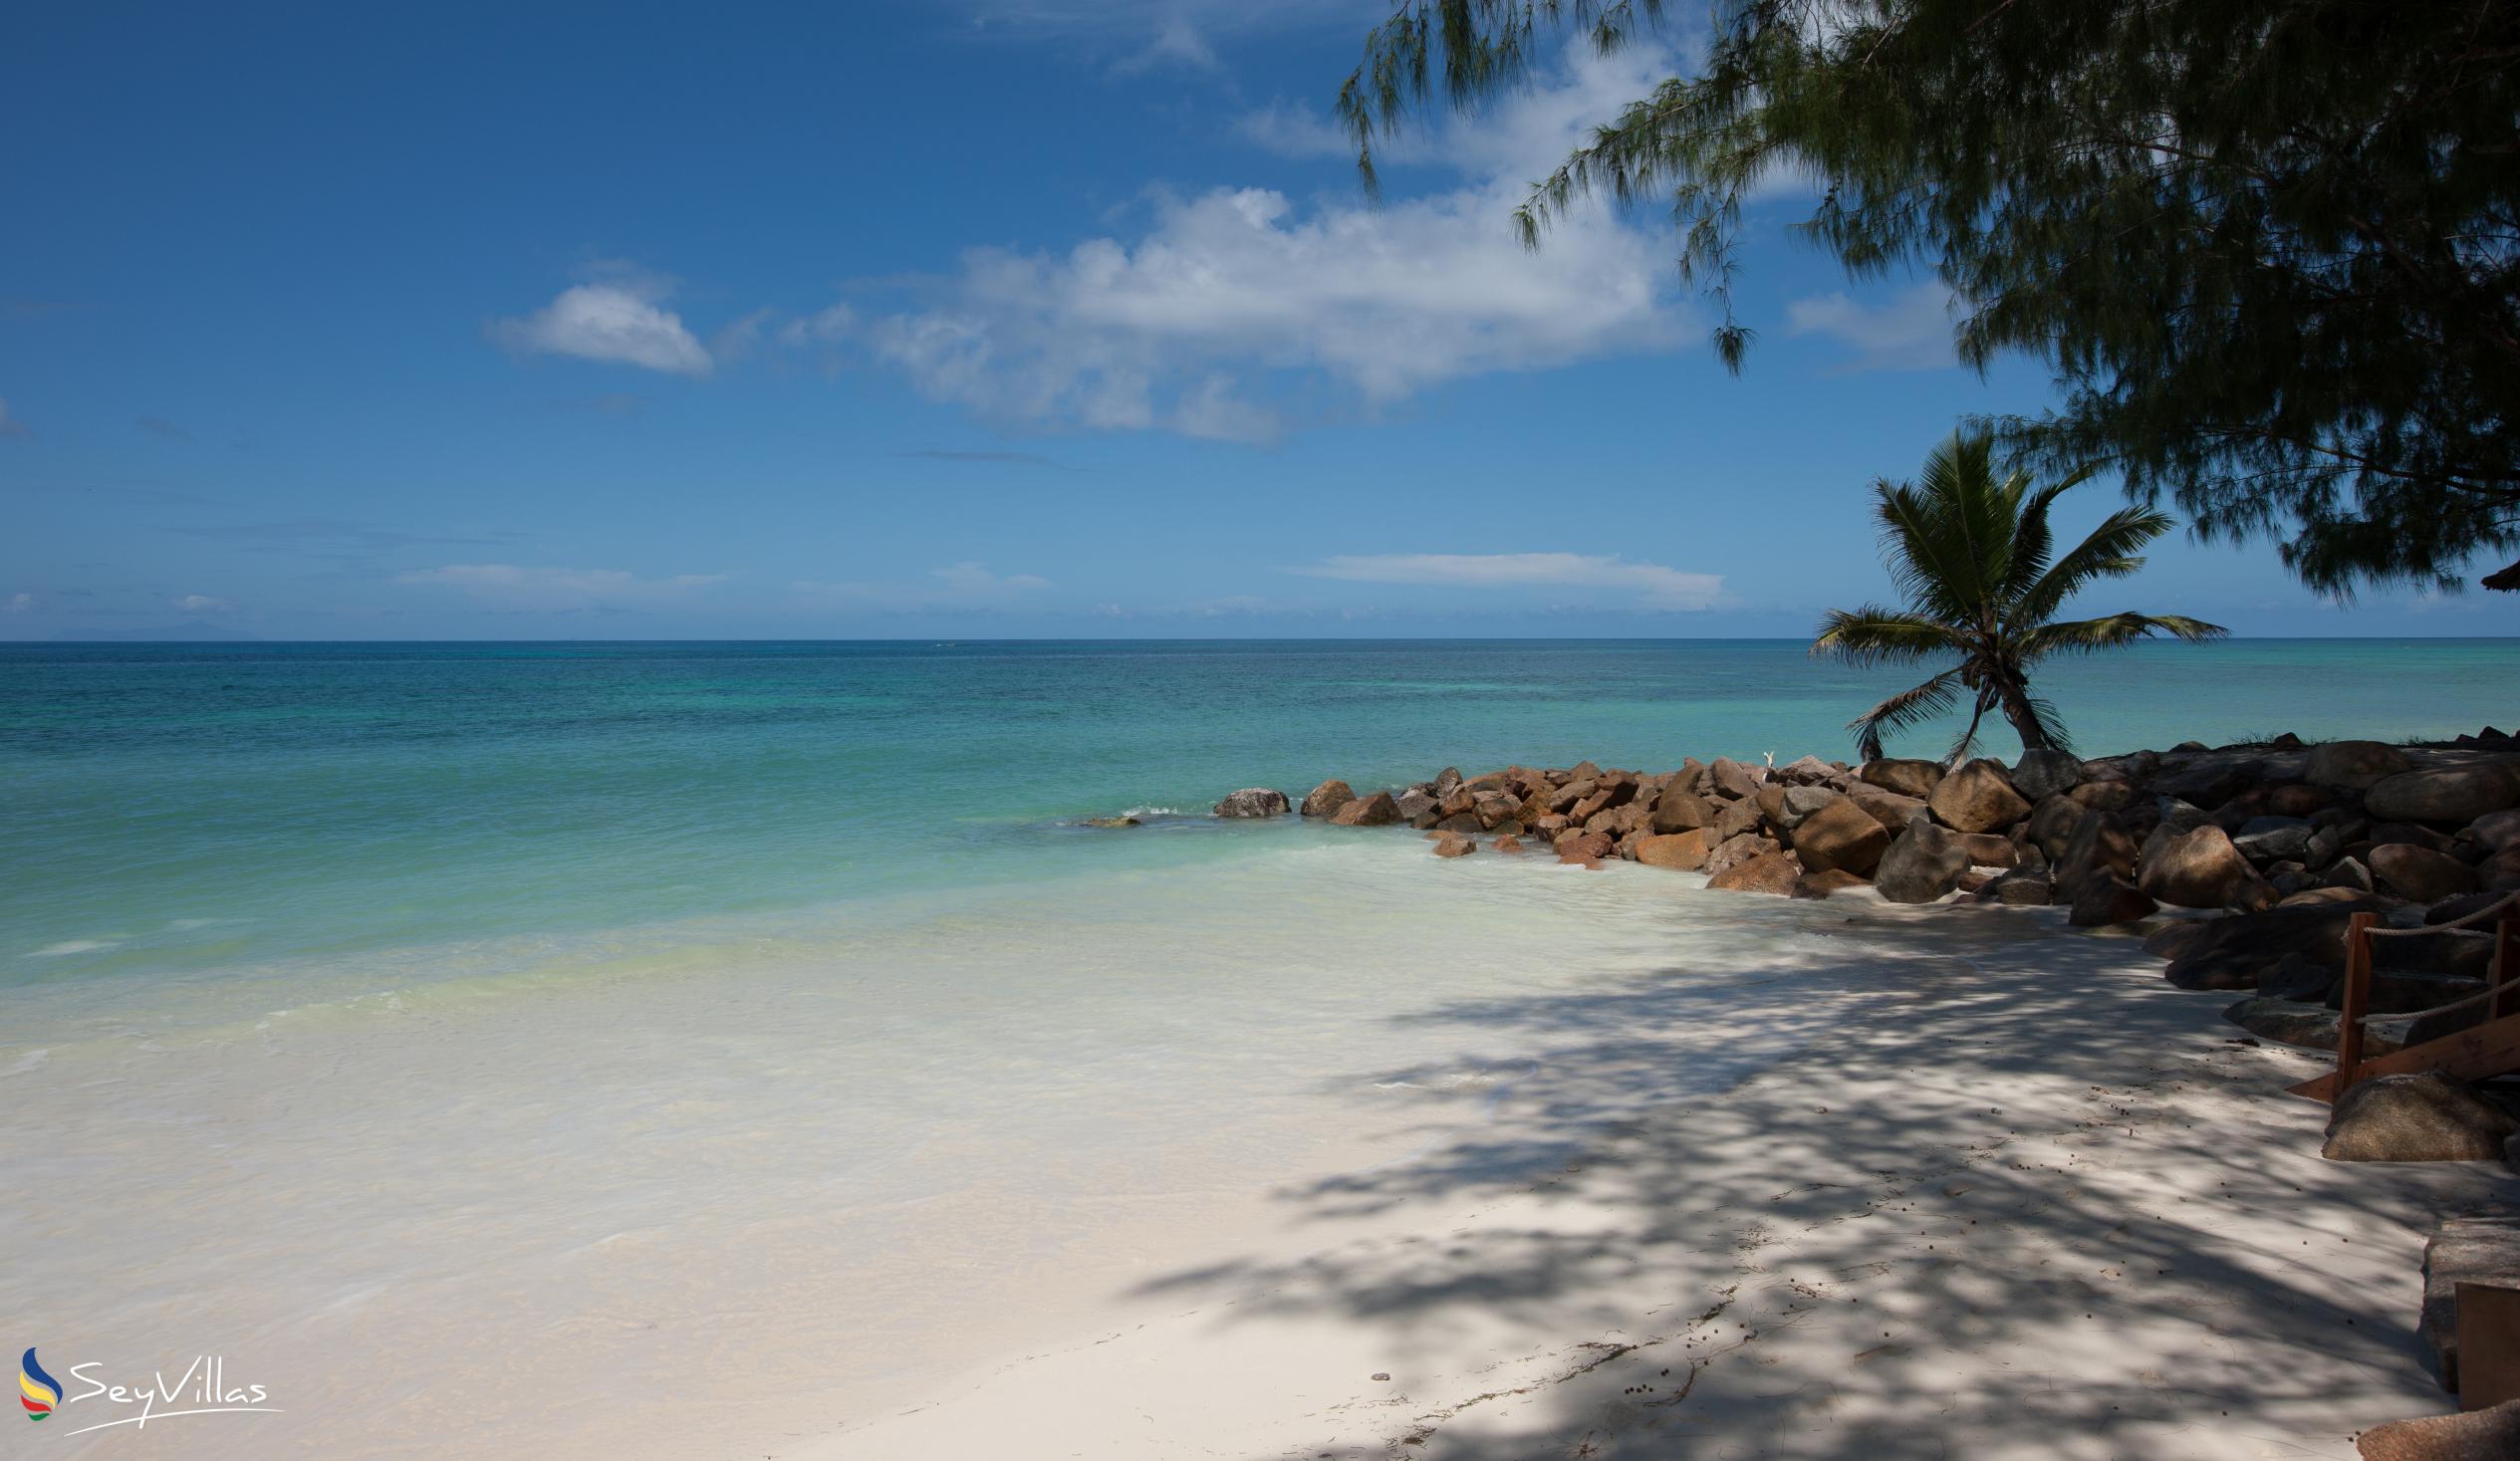 Foto 48: Castello Beach Hotel - Aussenbereich - Praslin (Seychellen)